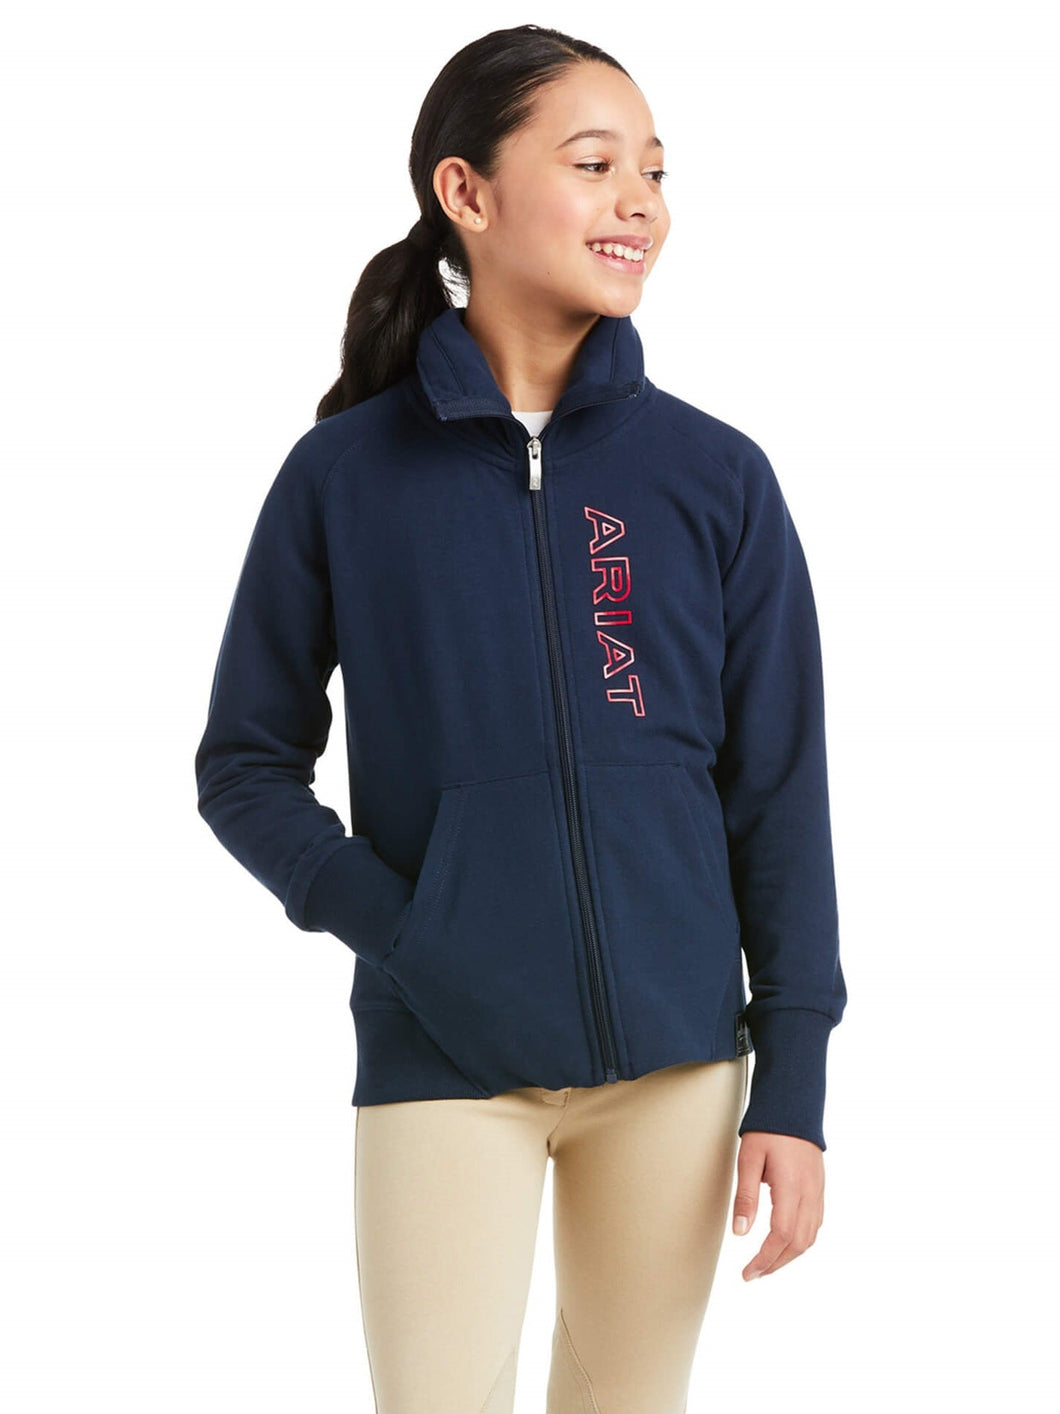 40% OFF - ARIAT Kids Team Logo Full Zip Sweatshirt - Team Navy - Size: XL (Age 14)